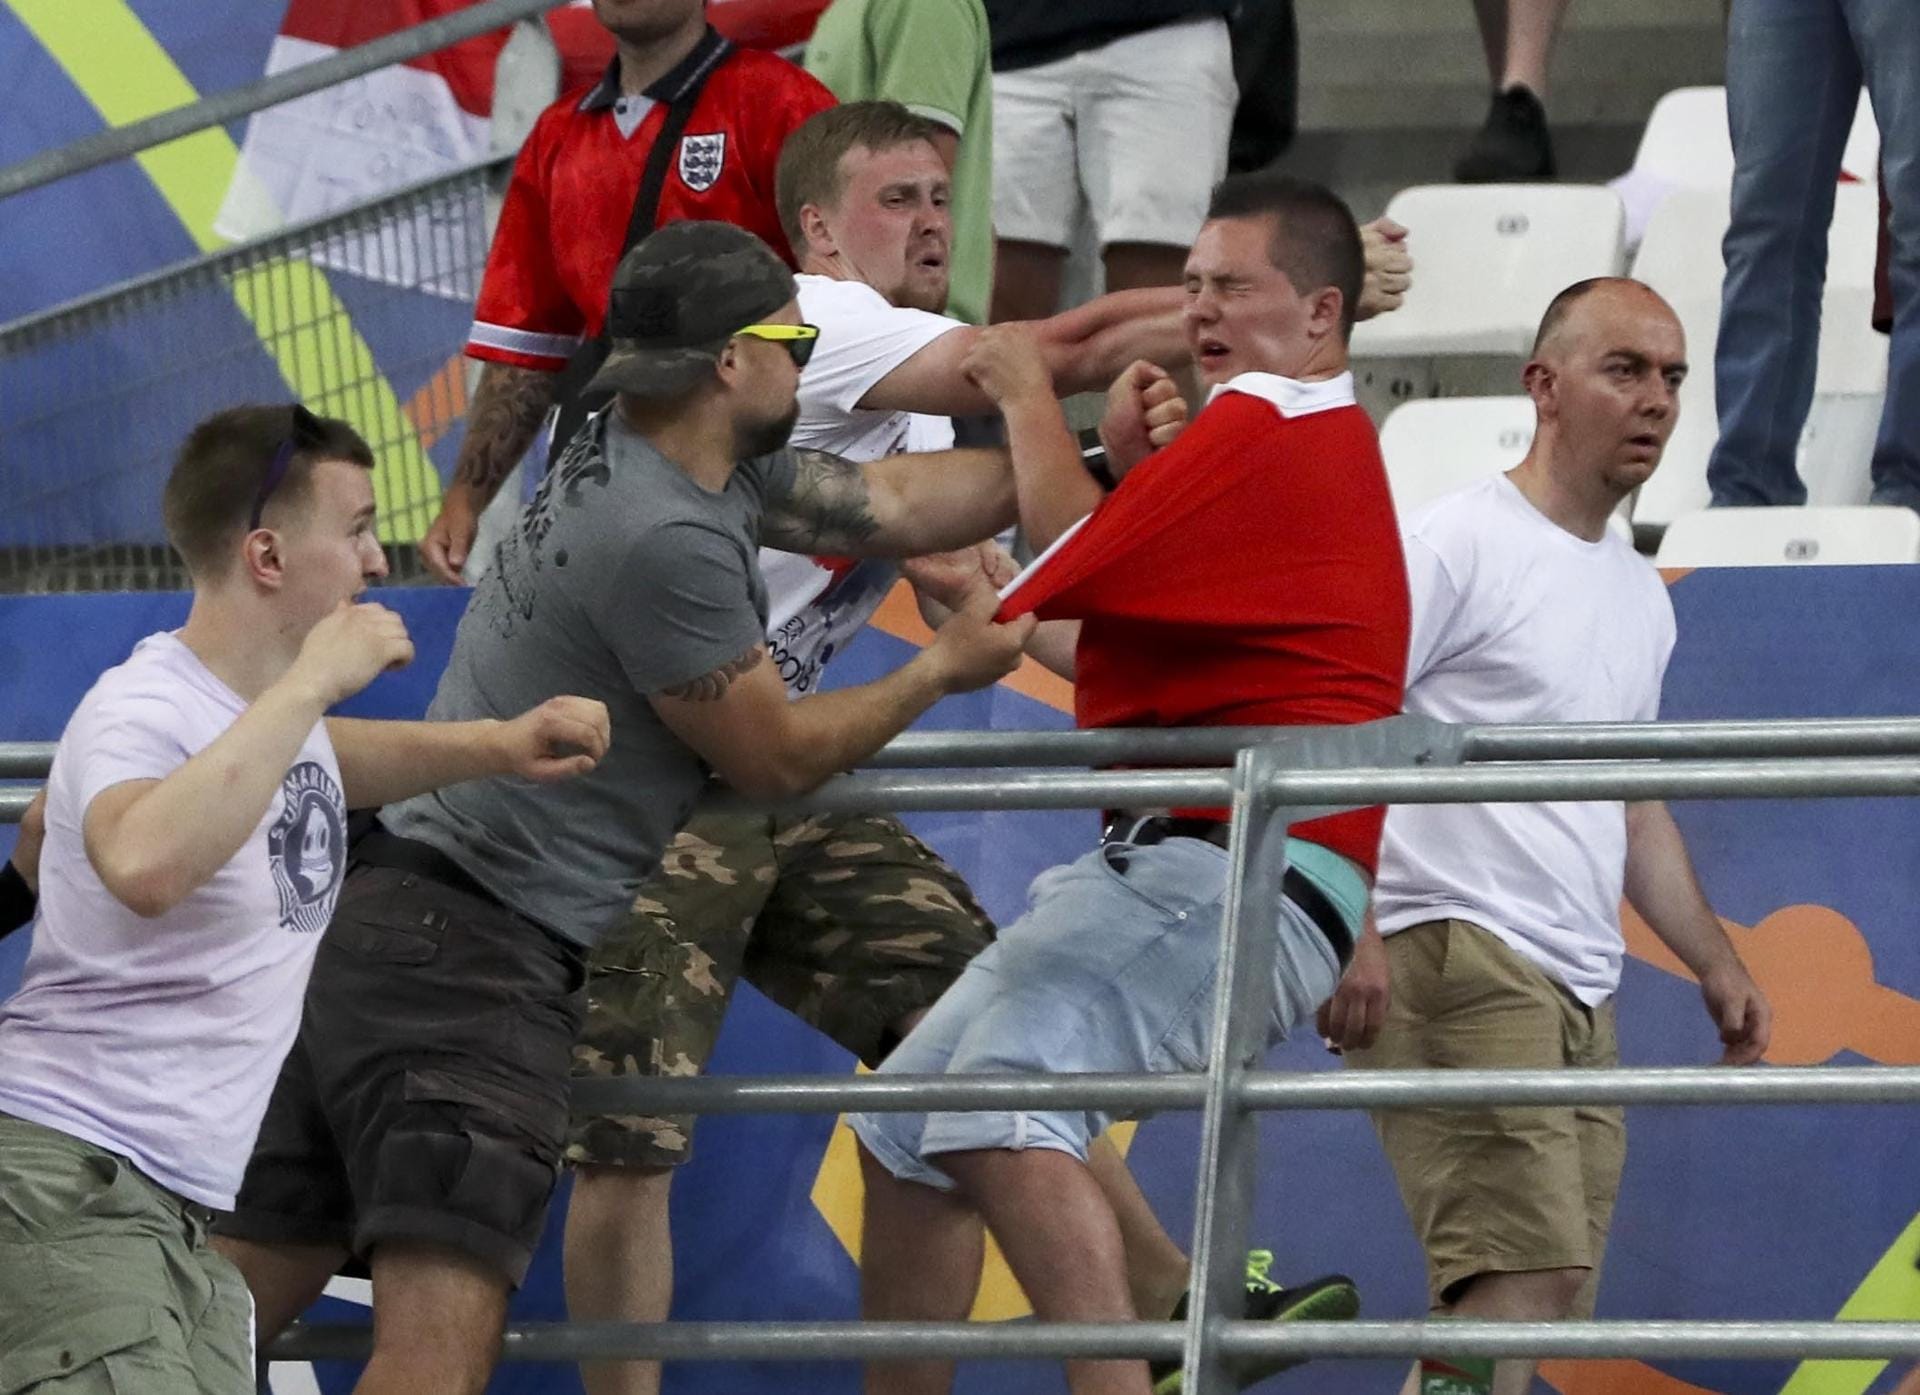 Nach dem EM-Spiel England gegen Russland am Samstagabend ist es im Stadion von Marseille zu Ausschreitungen gekommen. Dutzende russische Fußball-Fans stürmten kurz nach dem Abpfiff auf englische Anhänger los.